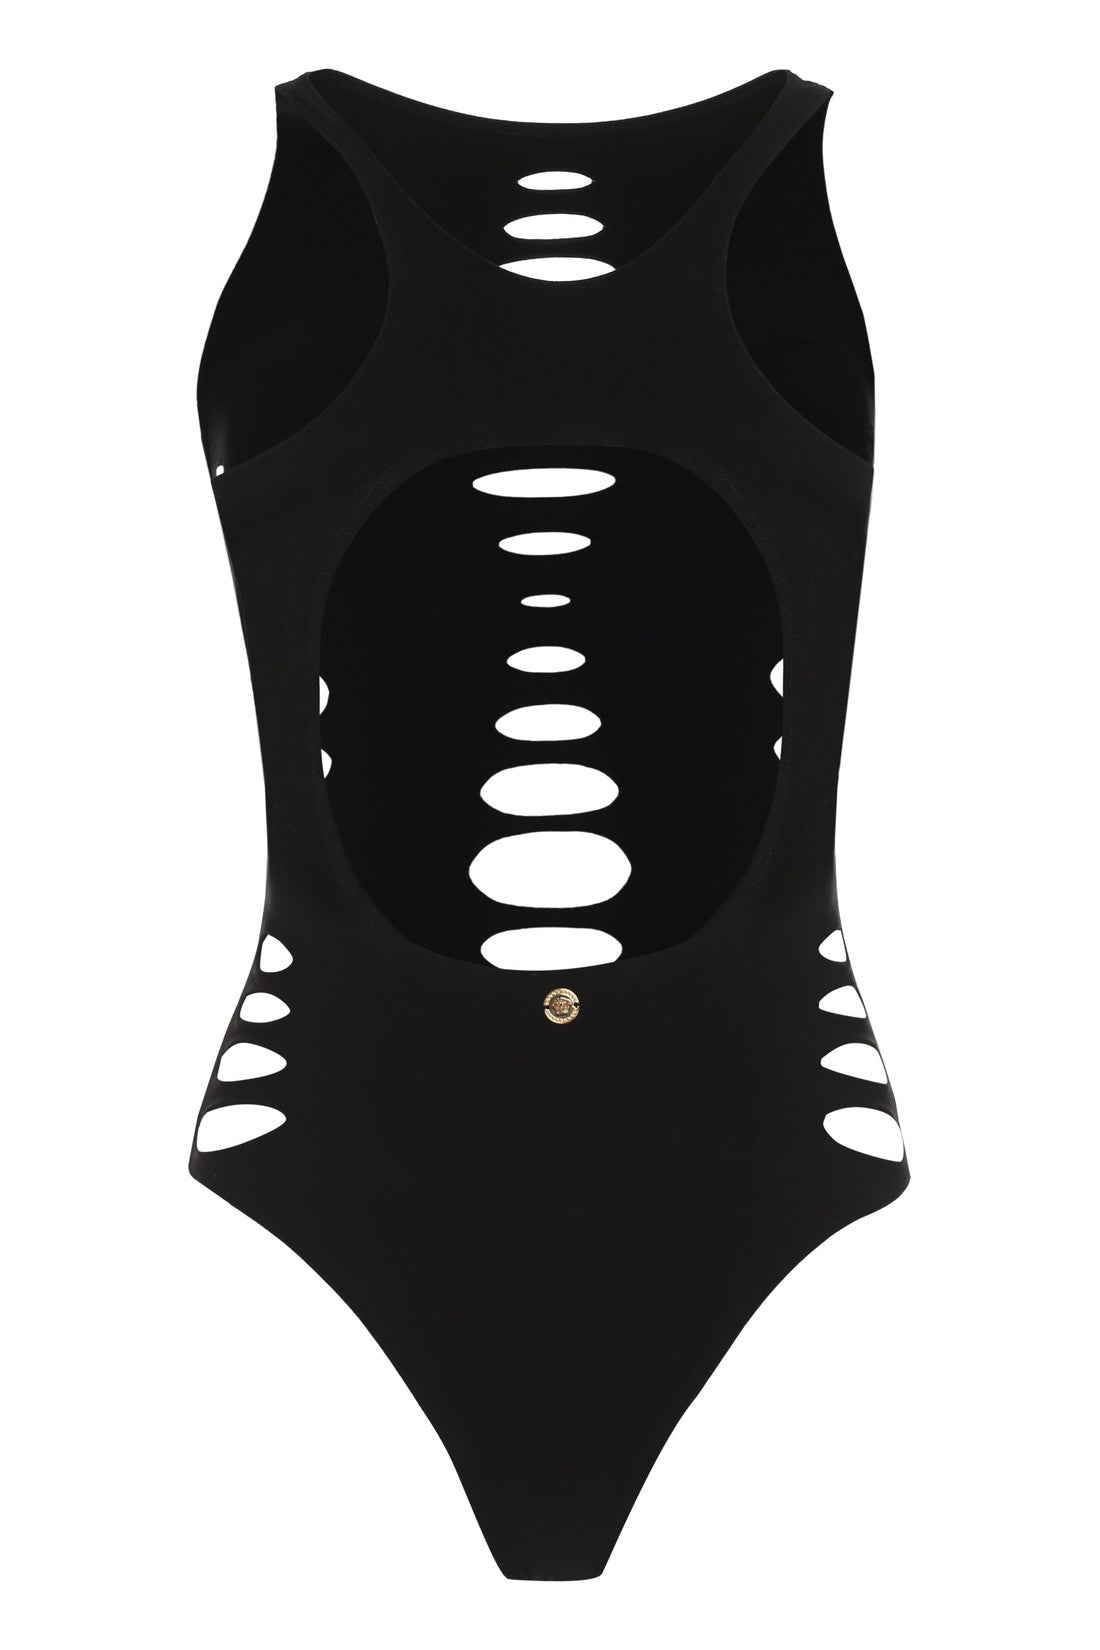 Versace-OUTLET-SALE-One-piece swimsuit-ARCHIVIST